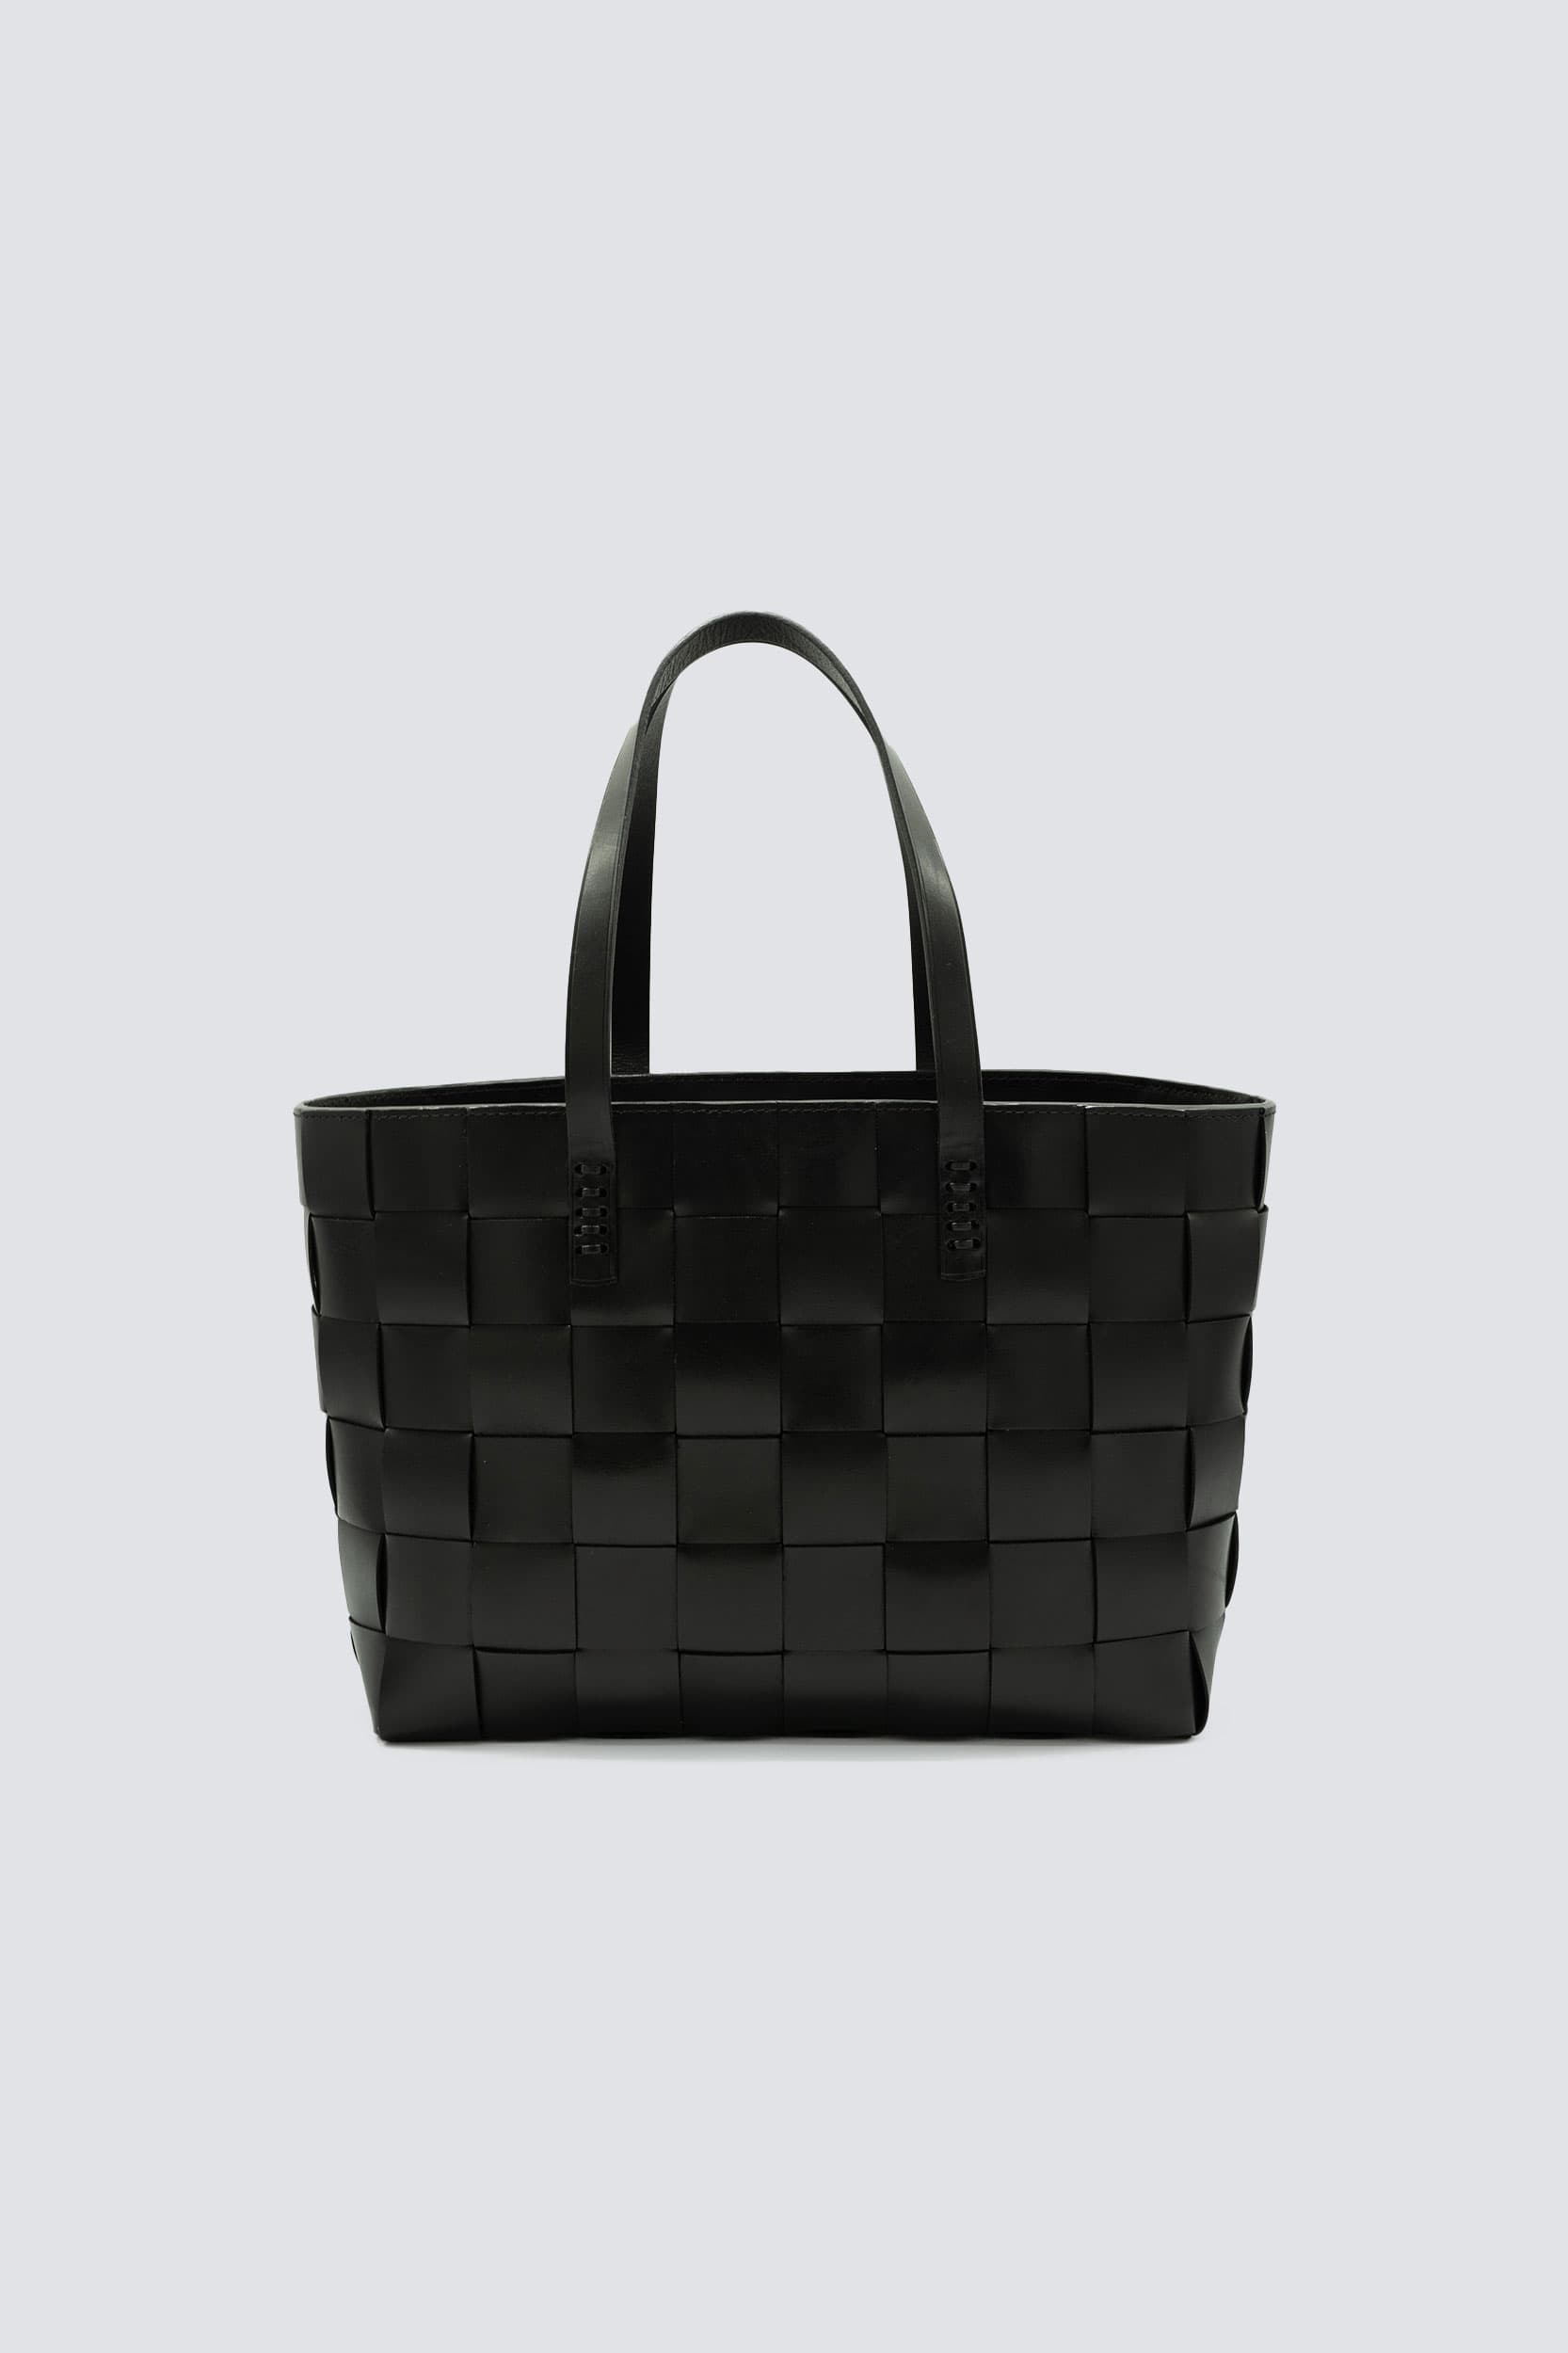 DRAGON DIFFUSION woven leather tote bag - Black